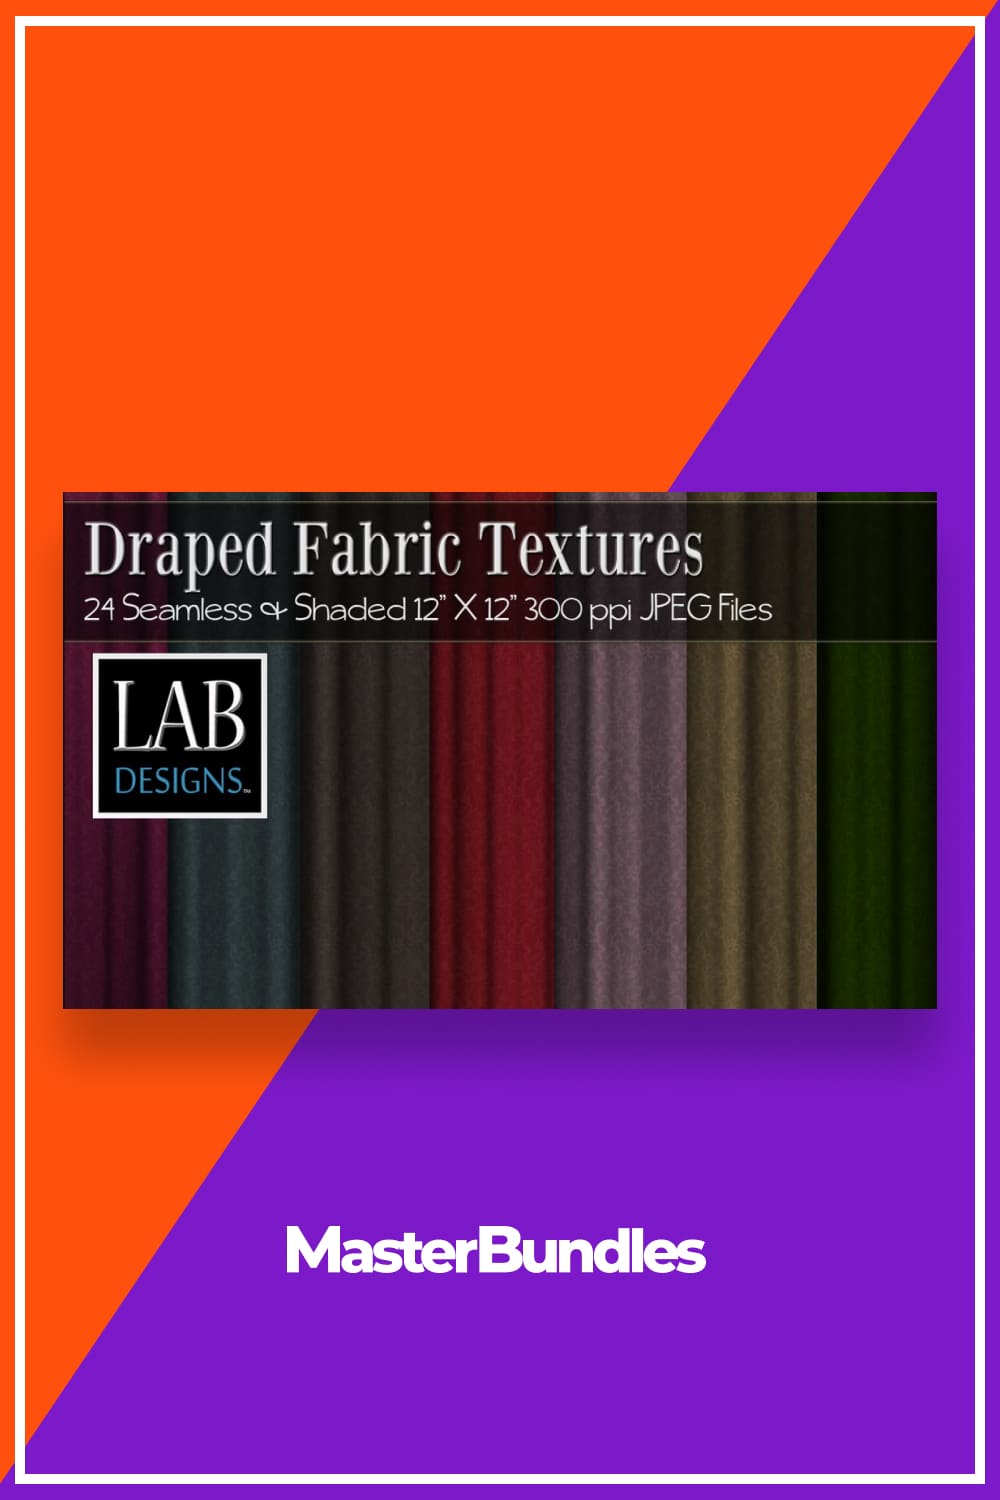 Draped fabric textures set.